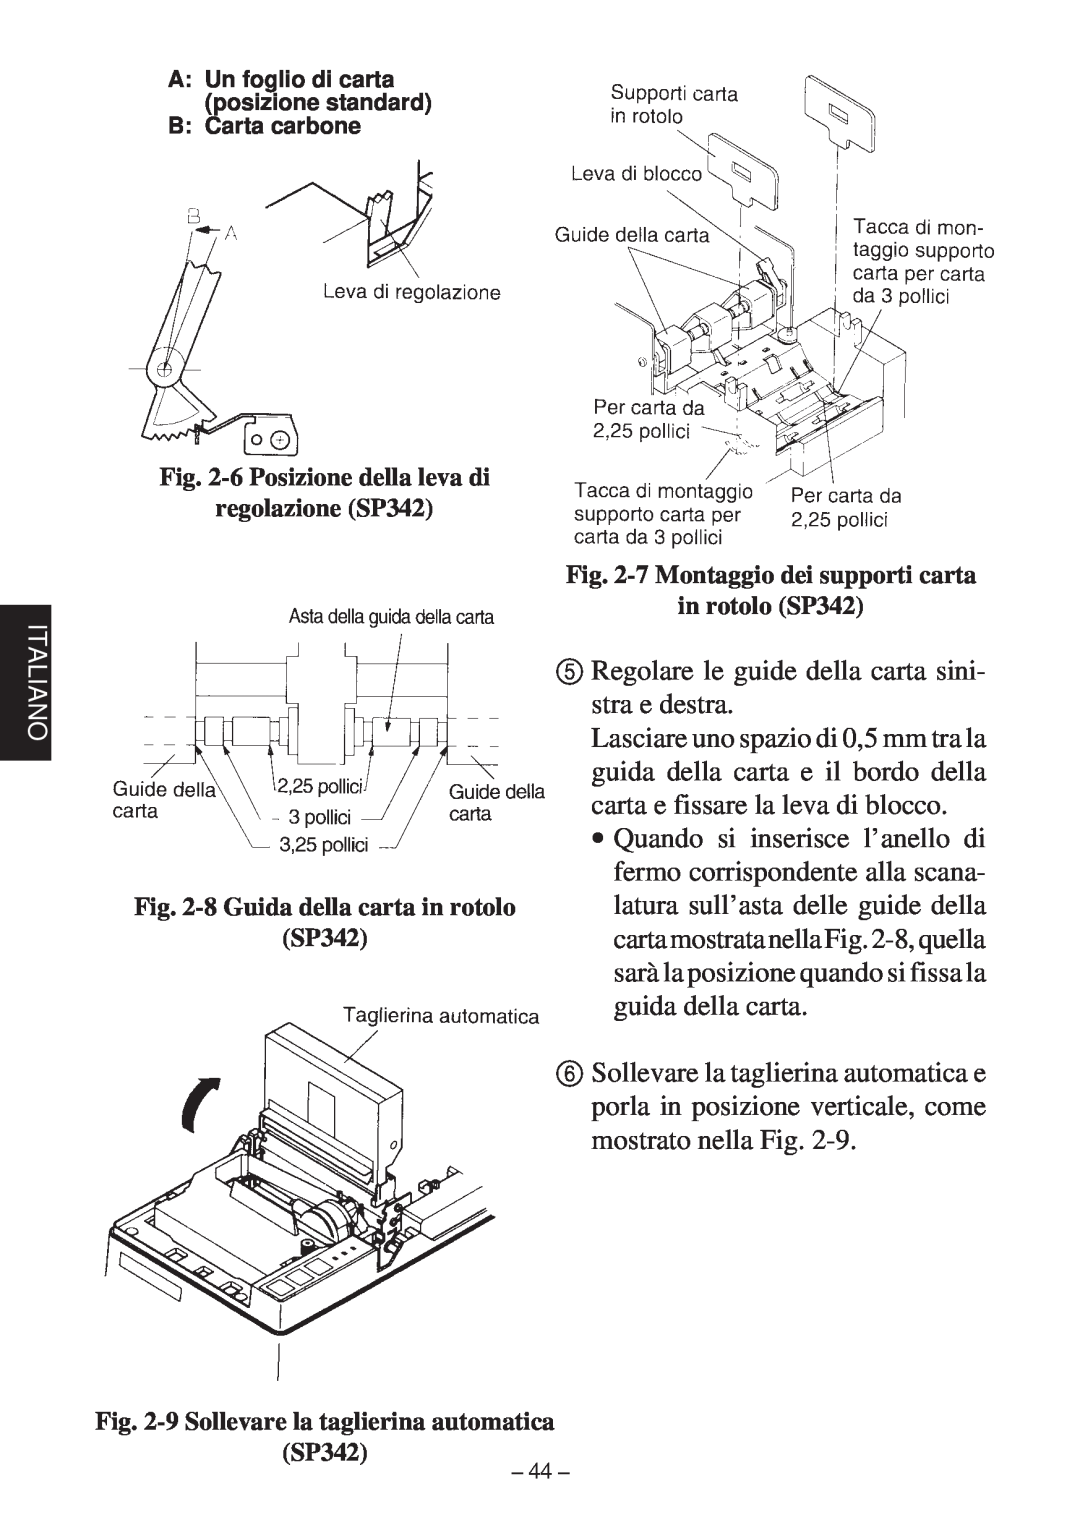 Star Micronics SP312F manual 6 Posizione della leva di regolazione SP342, 7 Montaggio dei supporti carta in rotolo SP342 